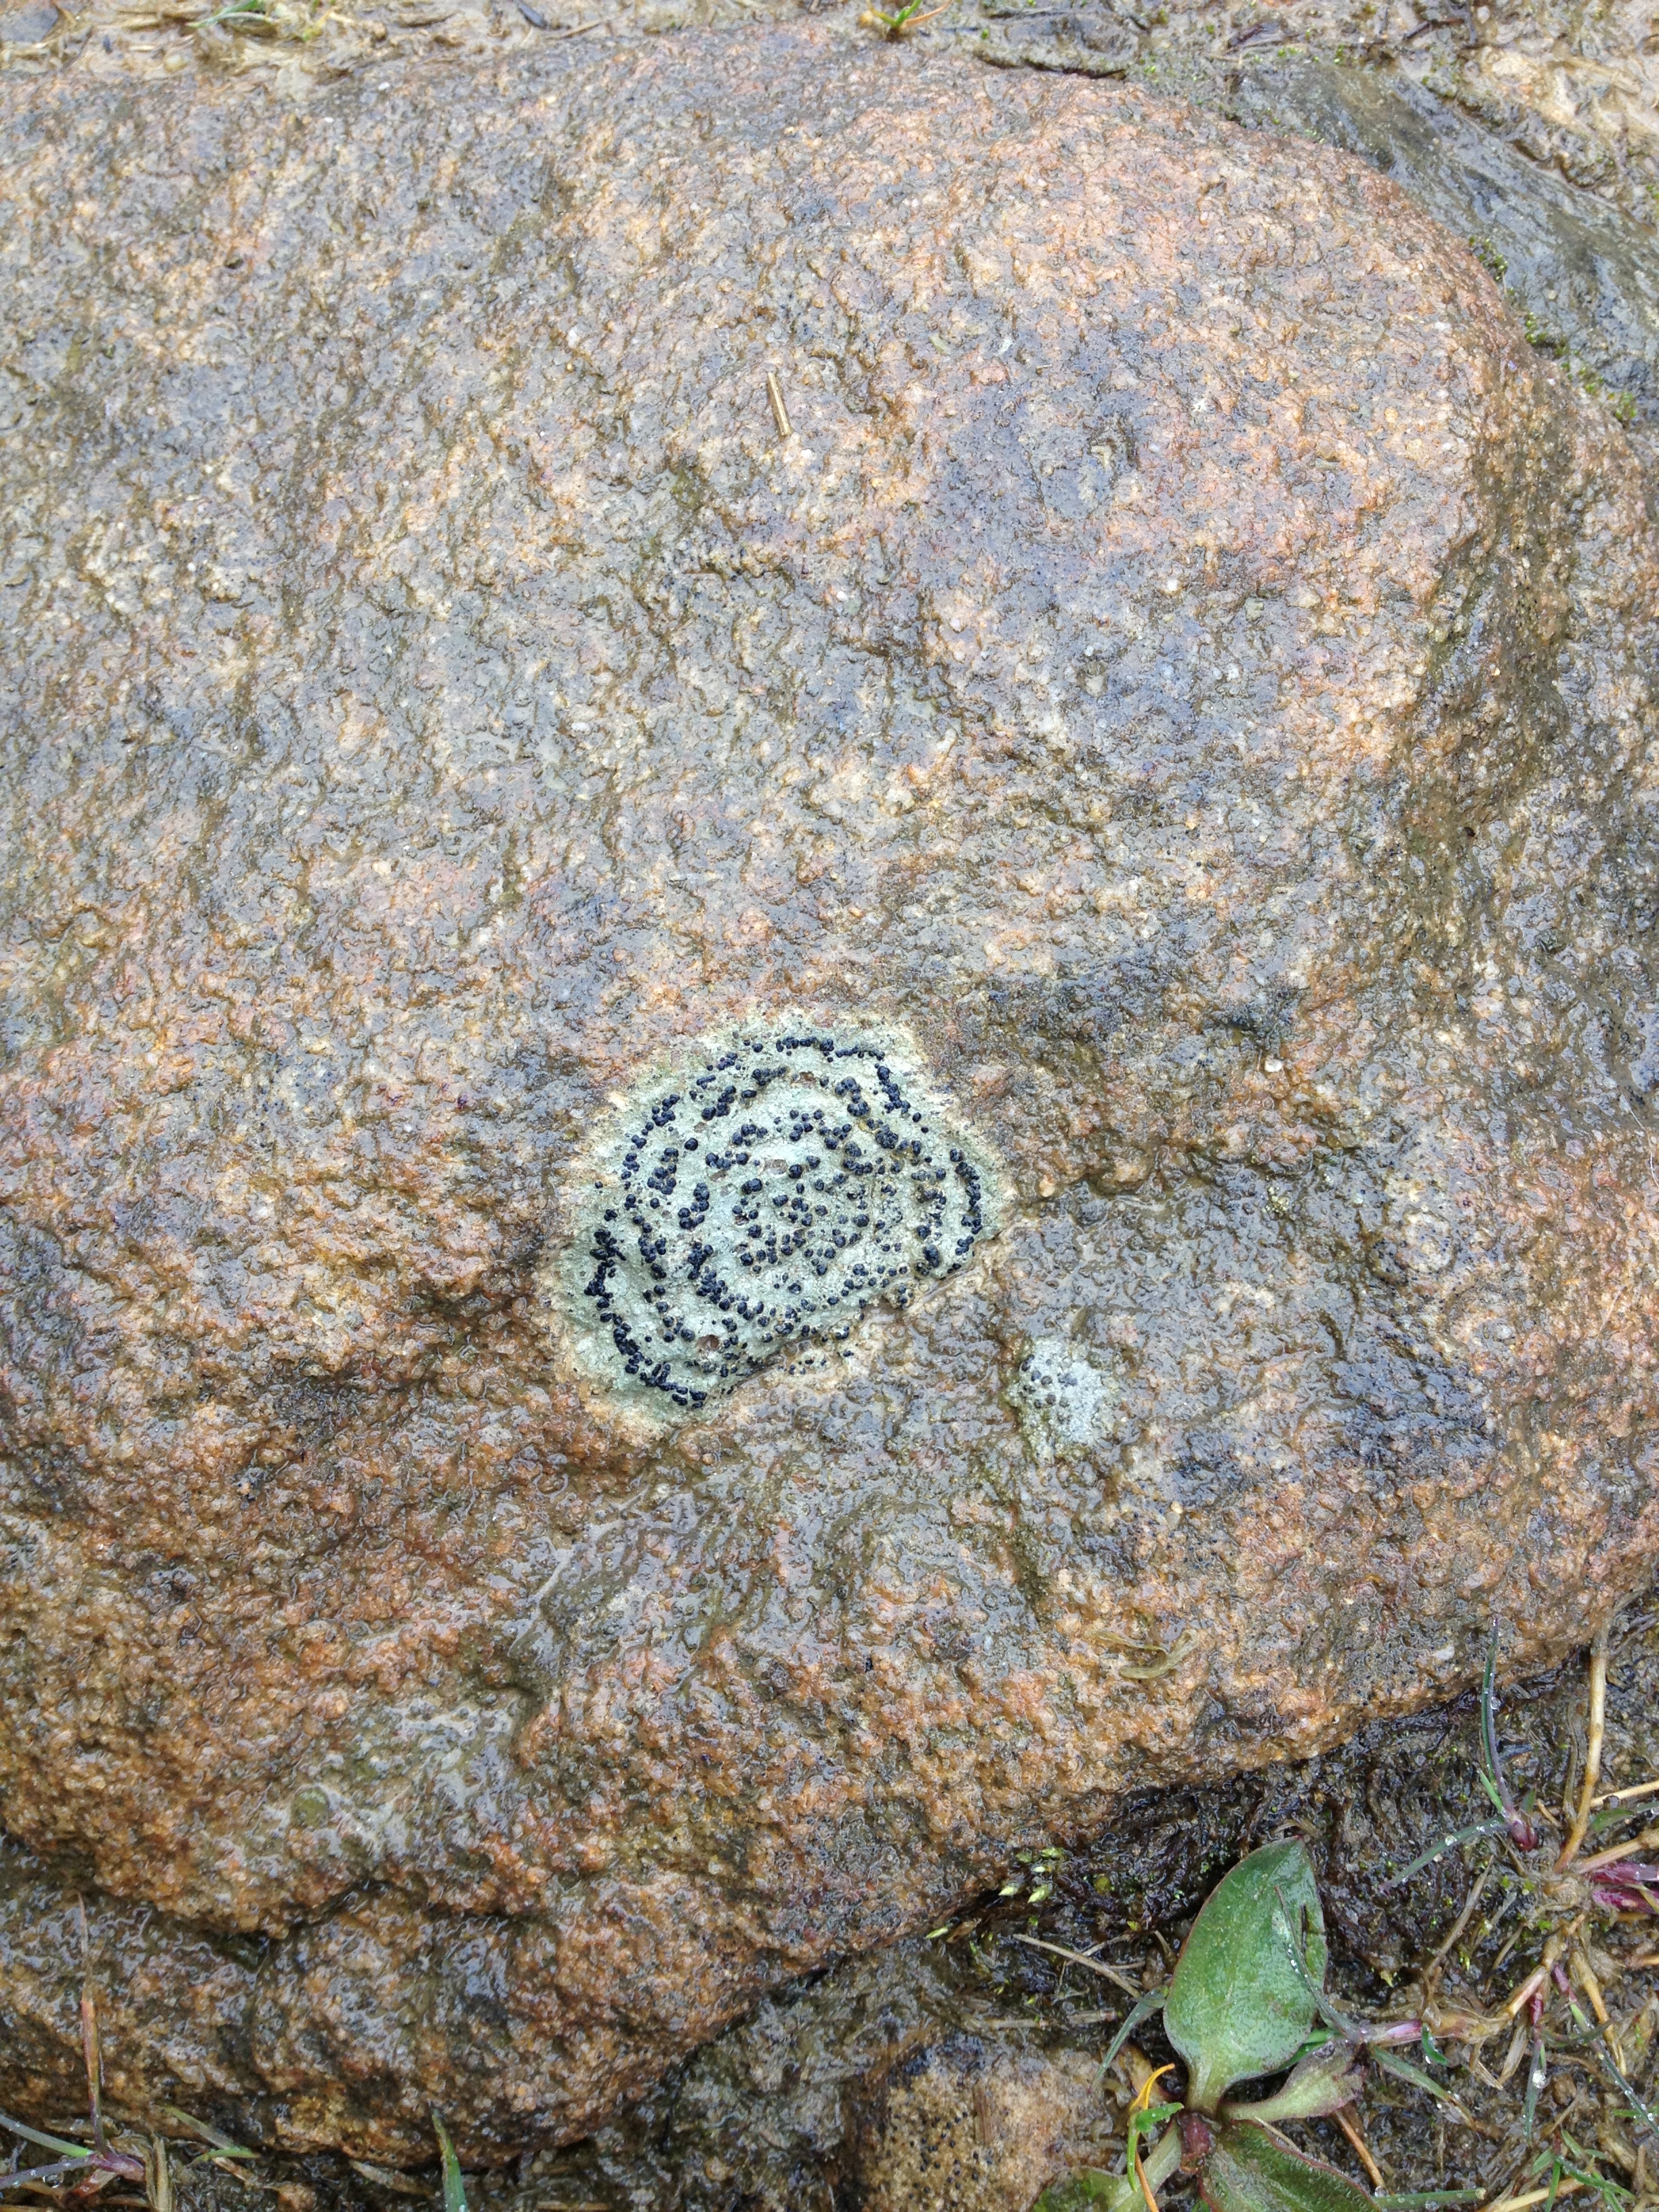 Distinctive lichen